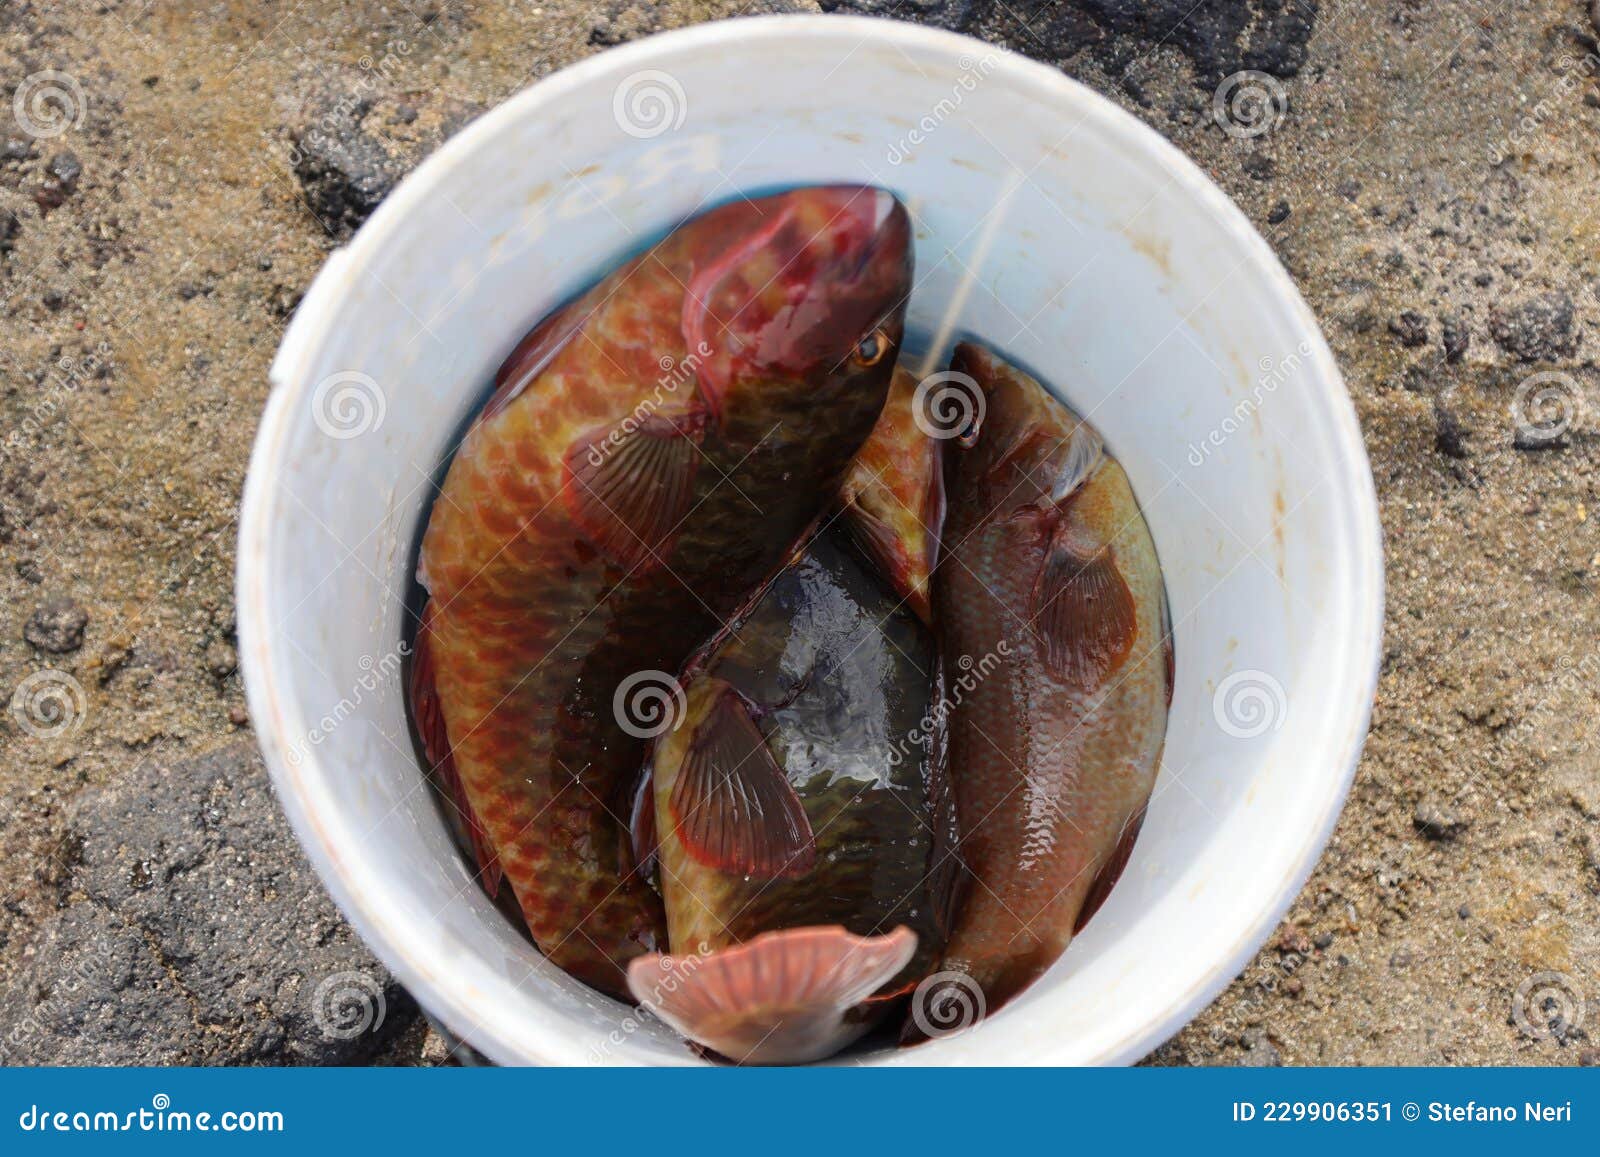 148 Bucket Full Fish Stock Photos - Free & Royalty-Free Stock